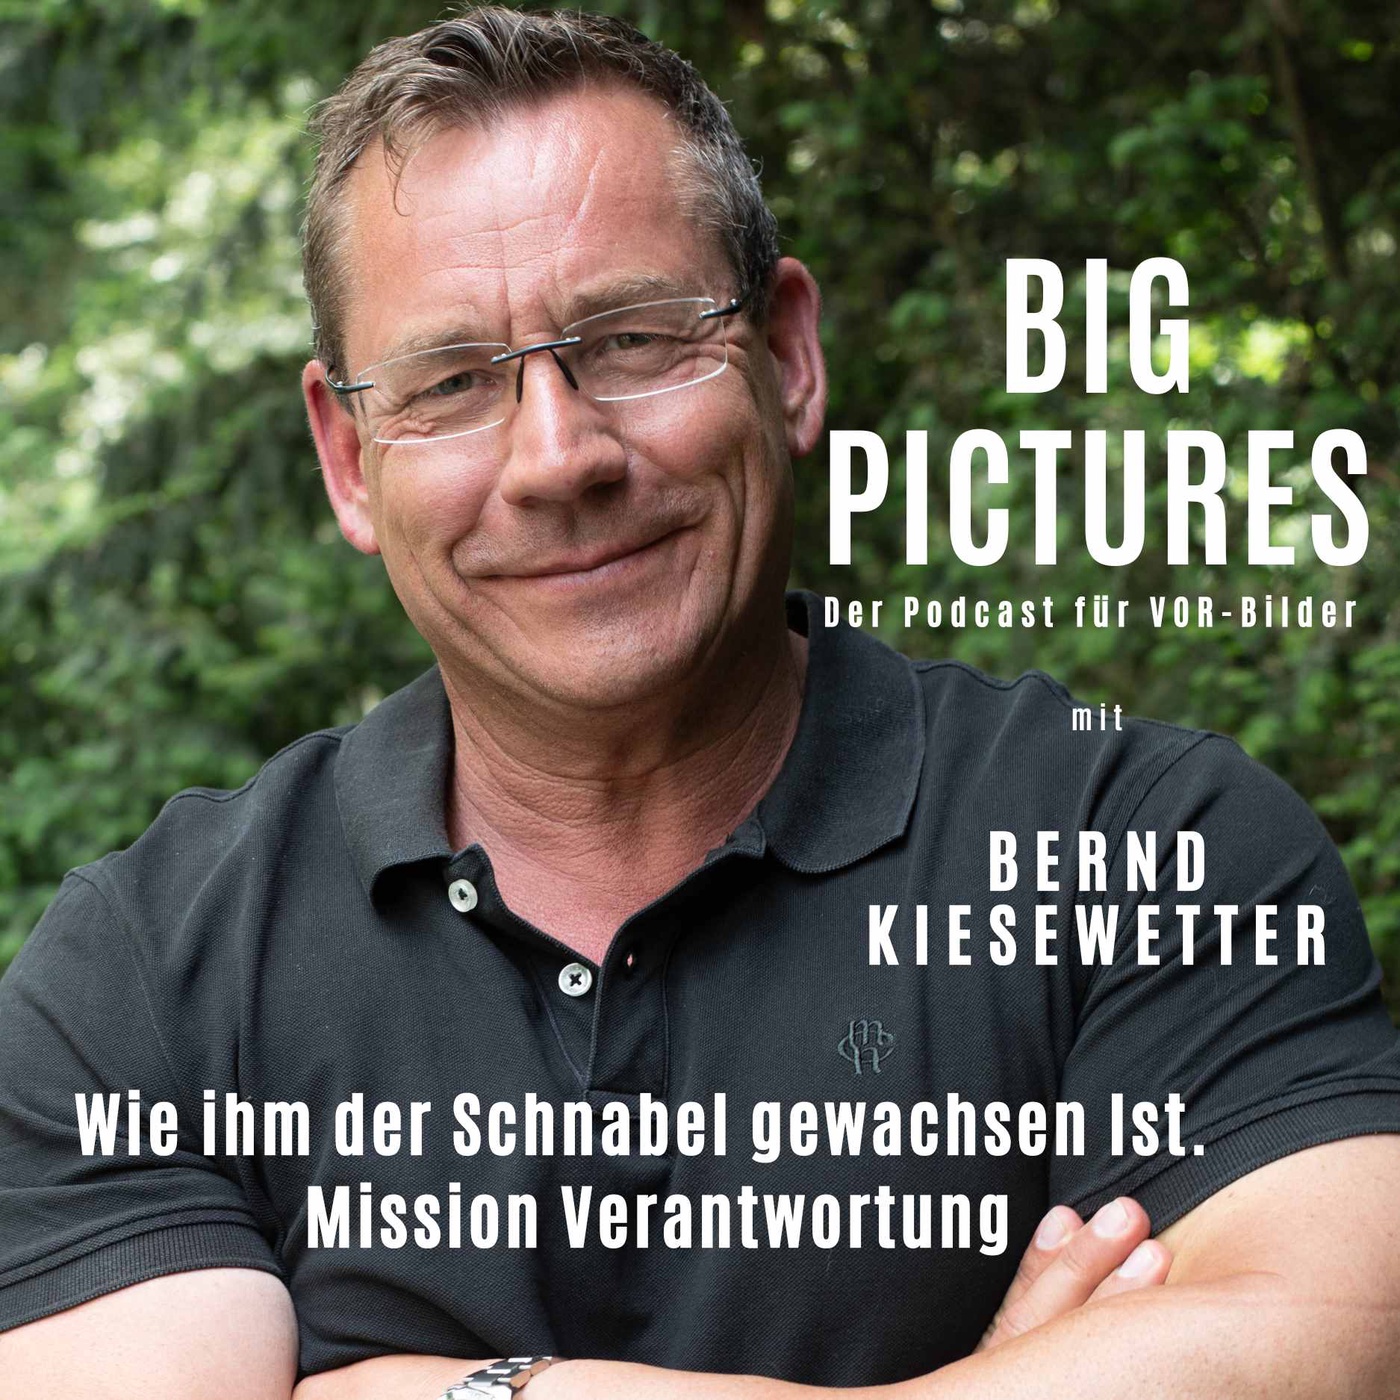 Bernd Kiesewetter: Mission Verantwortung